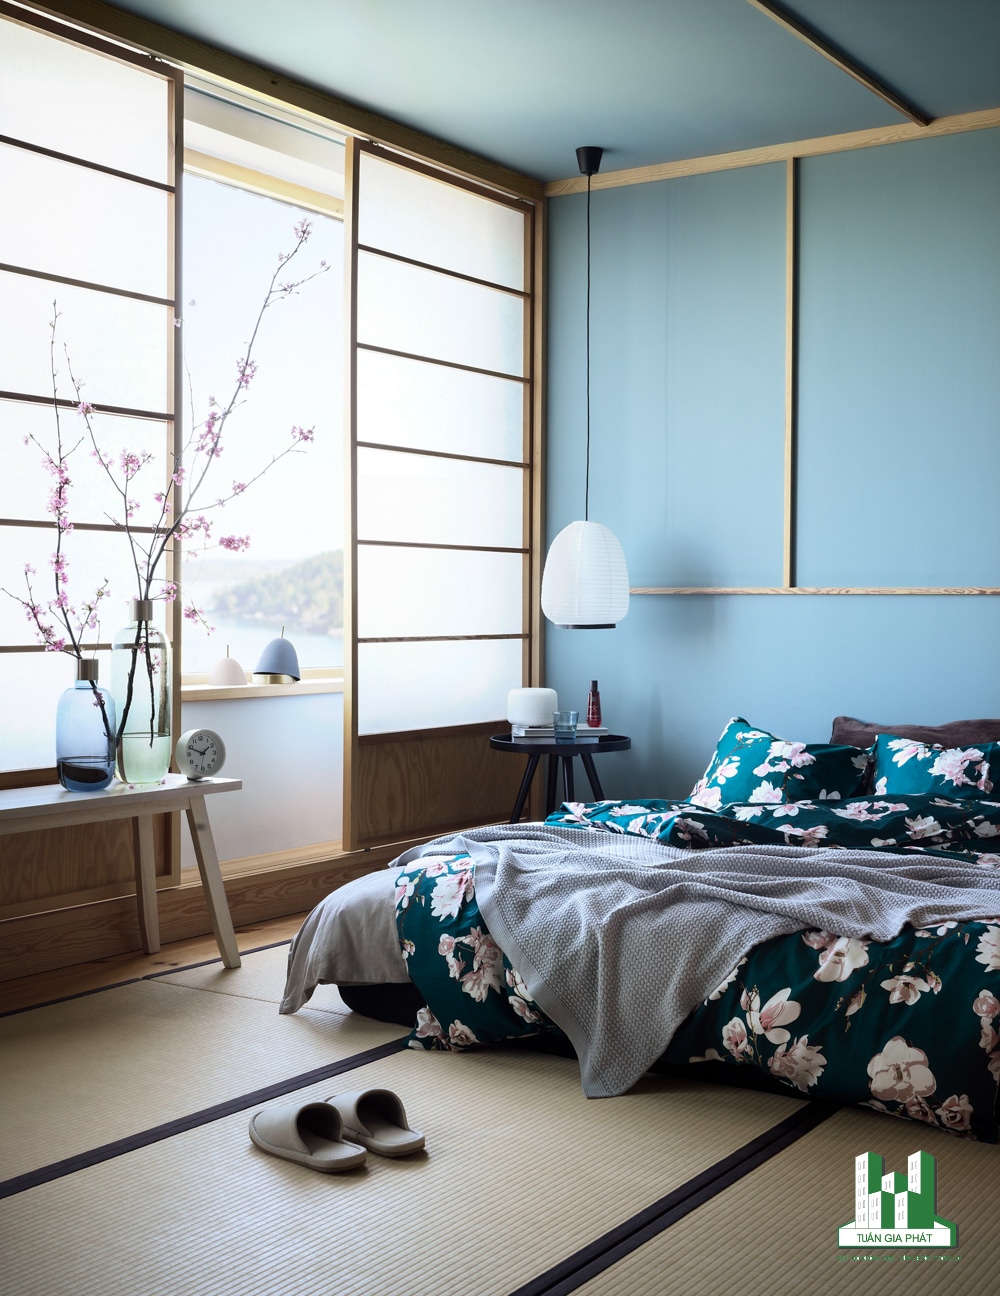 Phòng ngủ đẹp phong cách Zen với cửa trượt truyền thống của Nhật Bản, giường thấp và đồ nội thất bằng gỗ, tường và trần màu xanh lam, bộ khăn trải giường hình hoa.